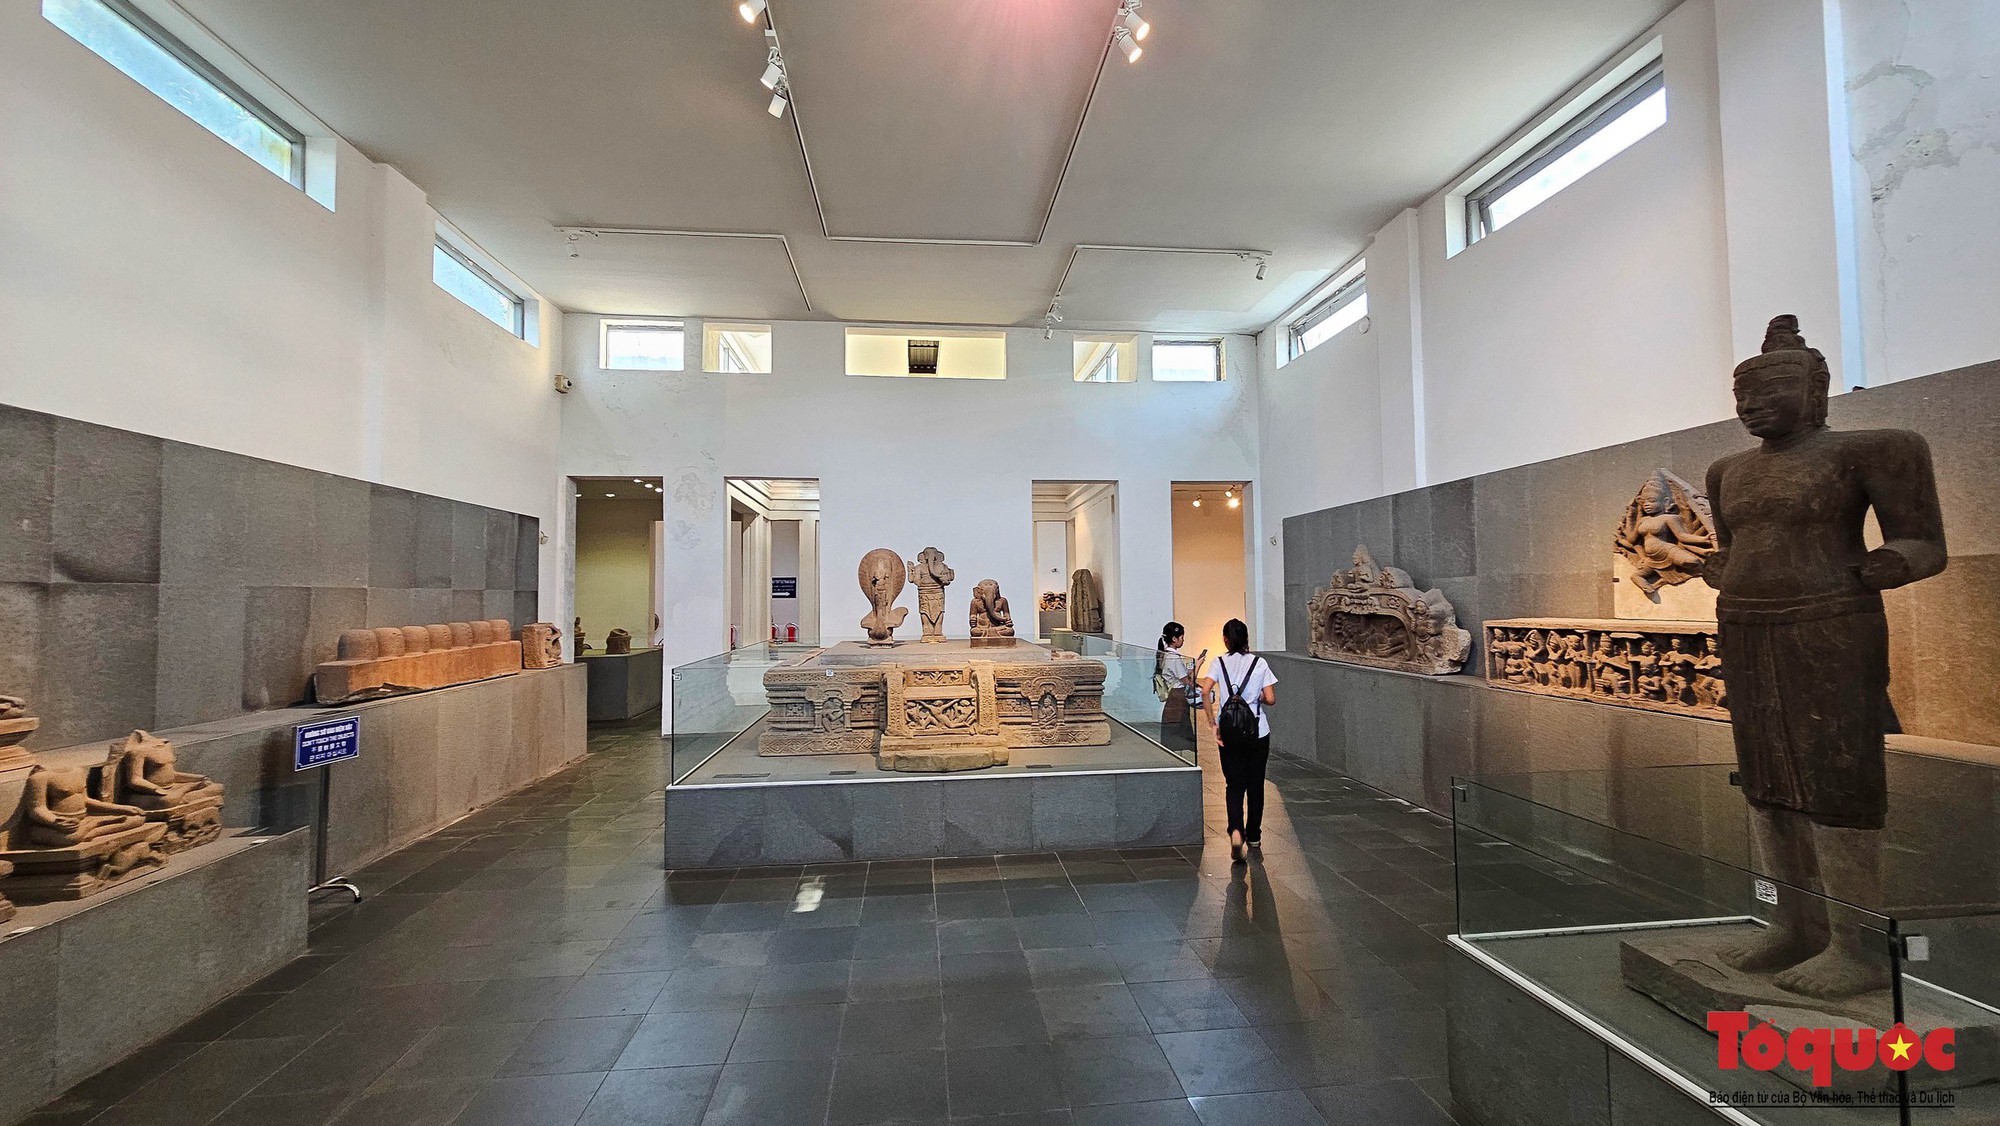 Cận cảnh bảo vật quốc gia tại Bảo tàng Điêu khắc Chăm Đà Nẵng - Ảnh 3.